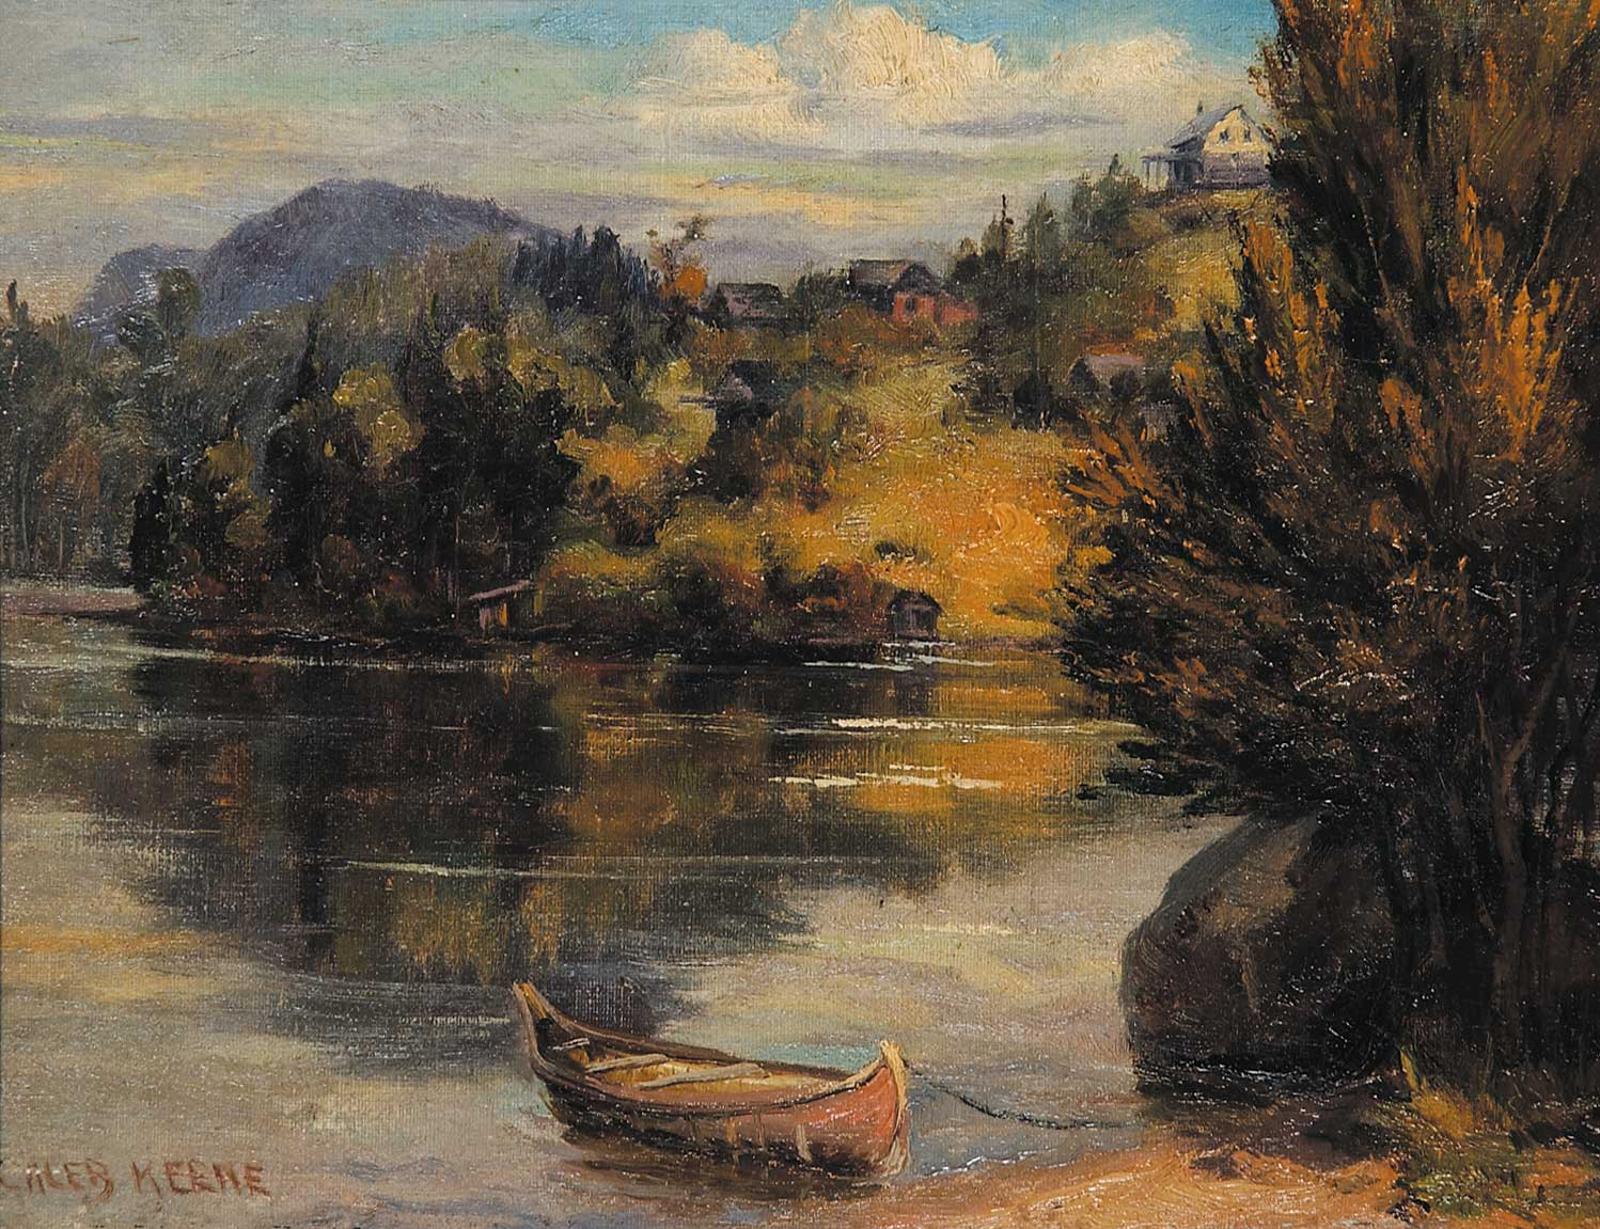 Caleb Keene (1862-1954) - Lac Superieur, Laurentian